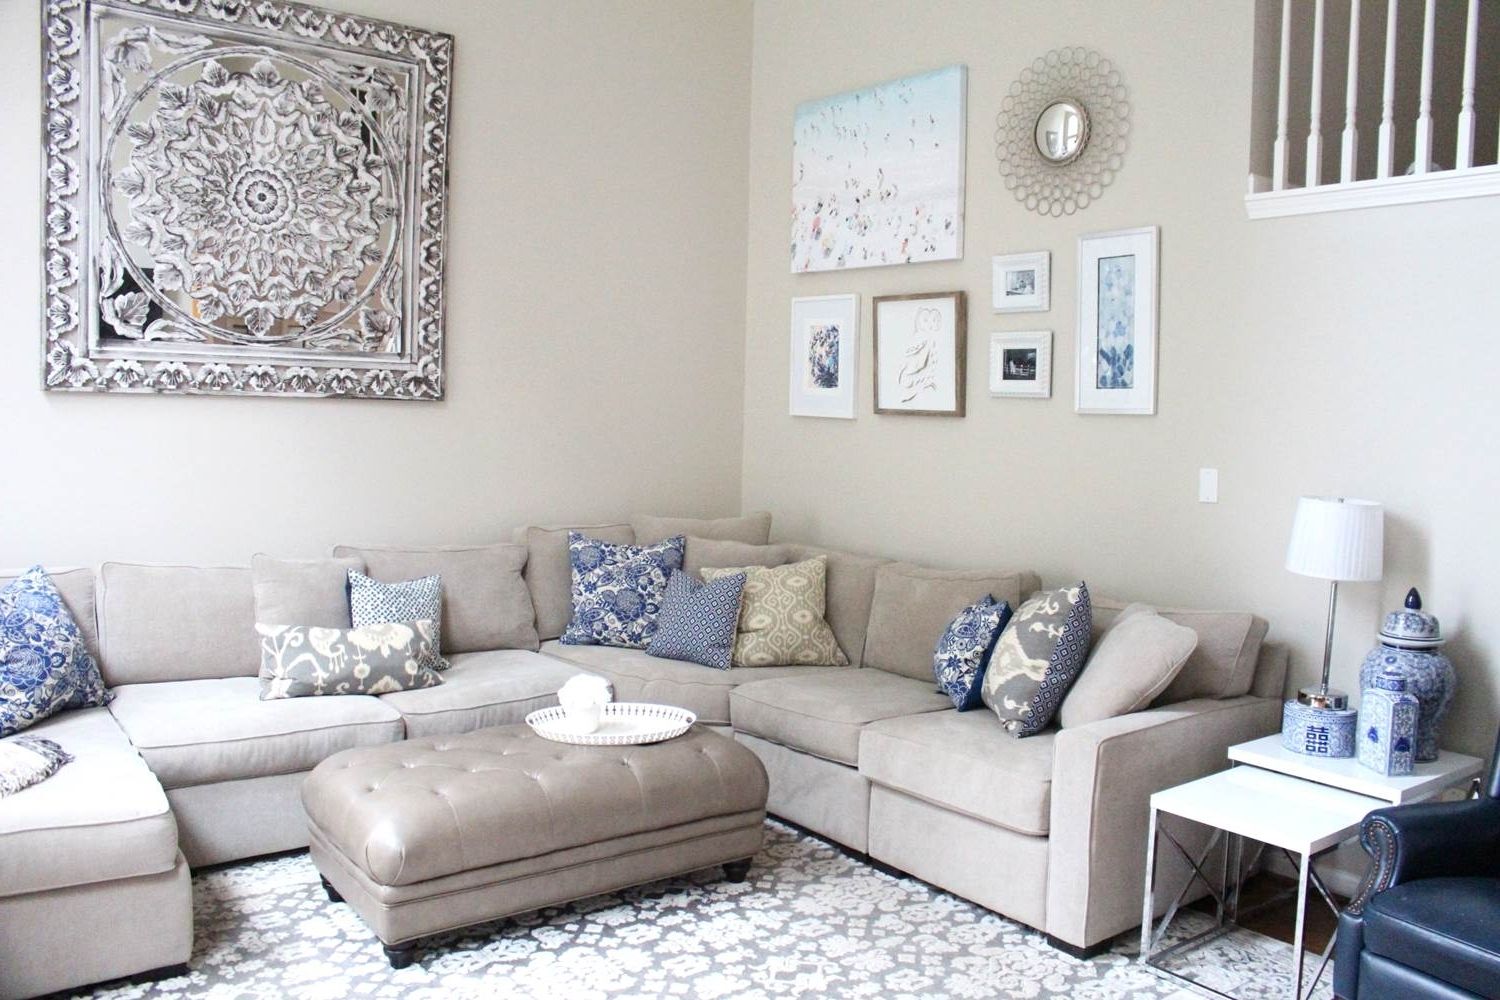 The Best Framed Art Prints for Living Room